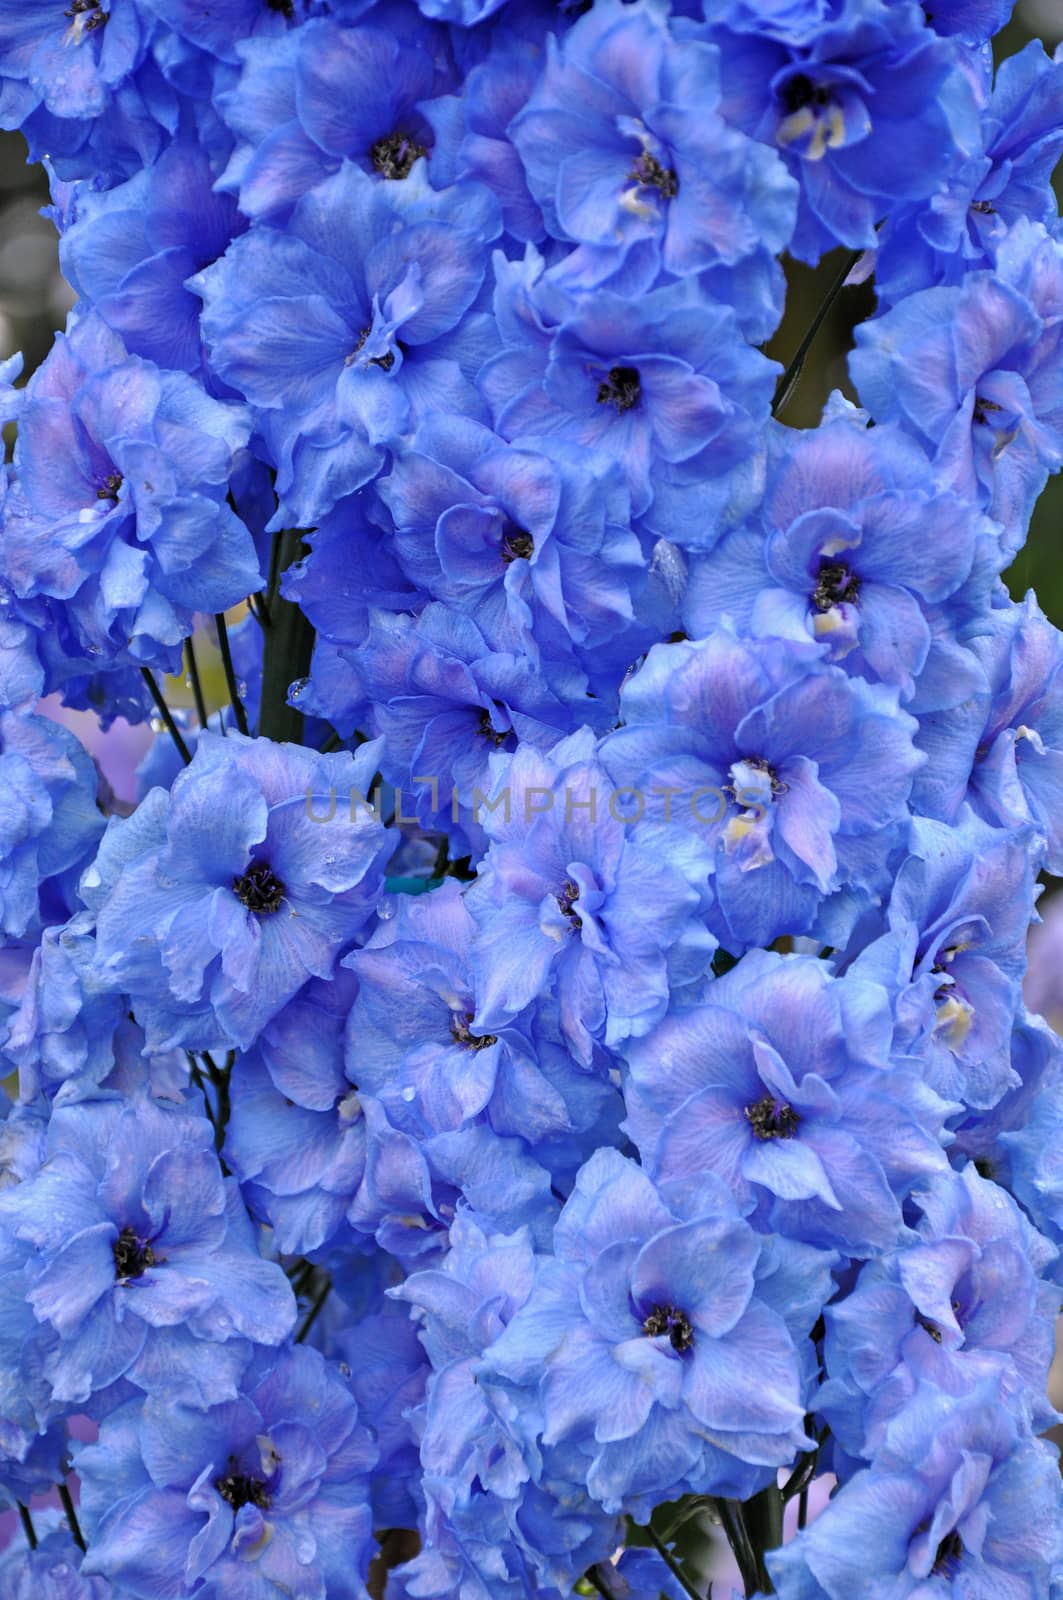 Blue delphinium flowers by ingperl